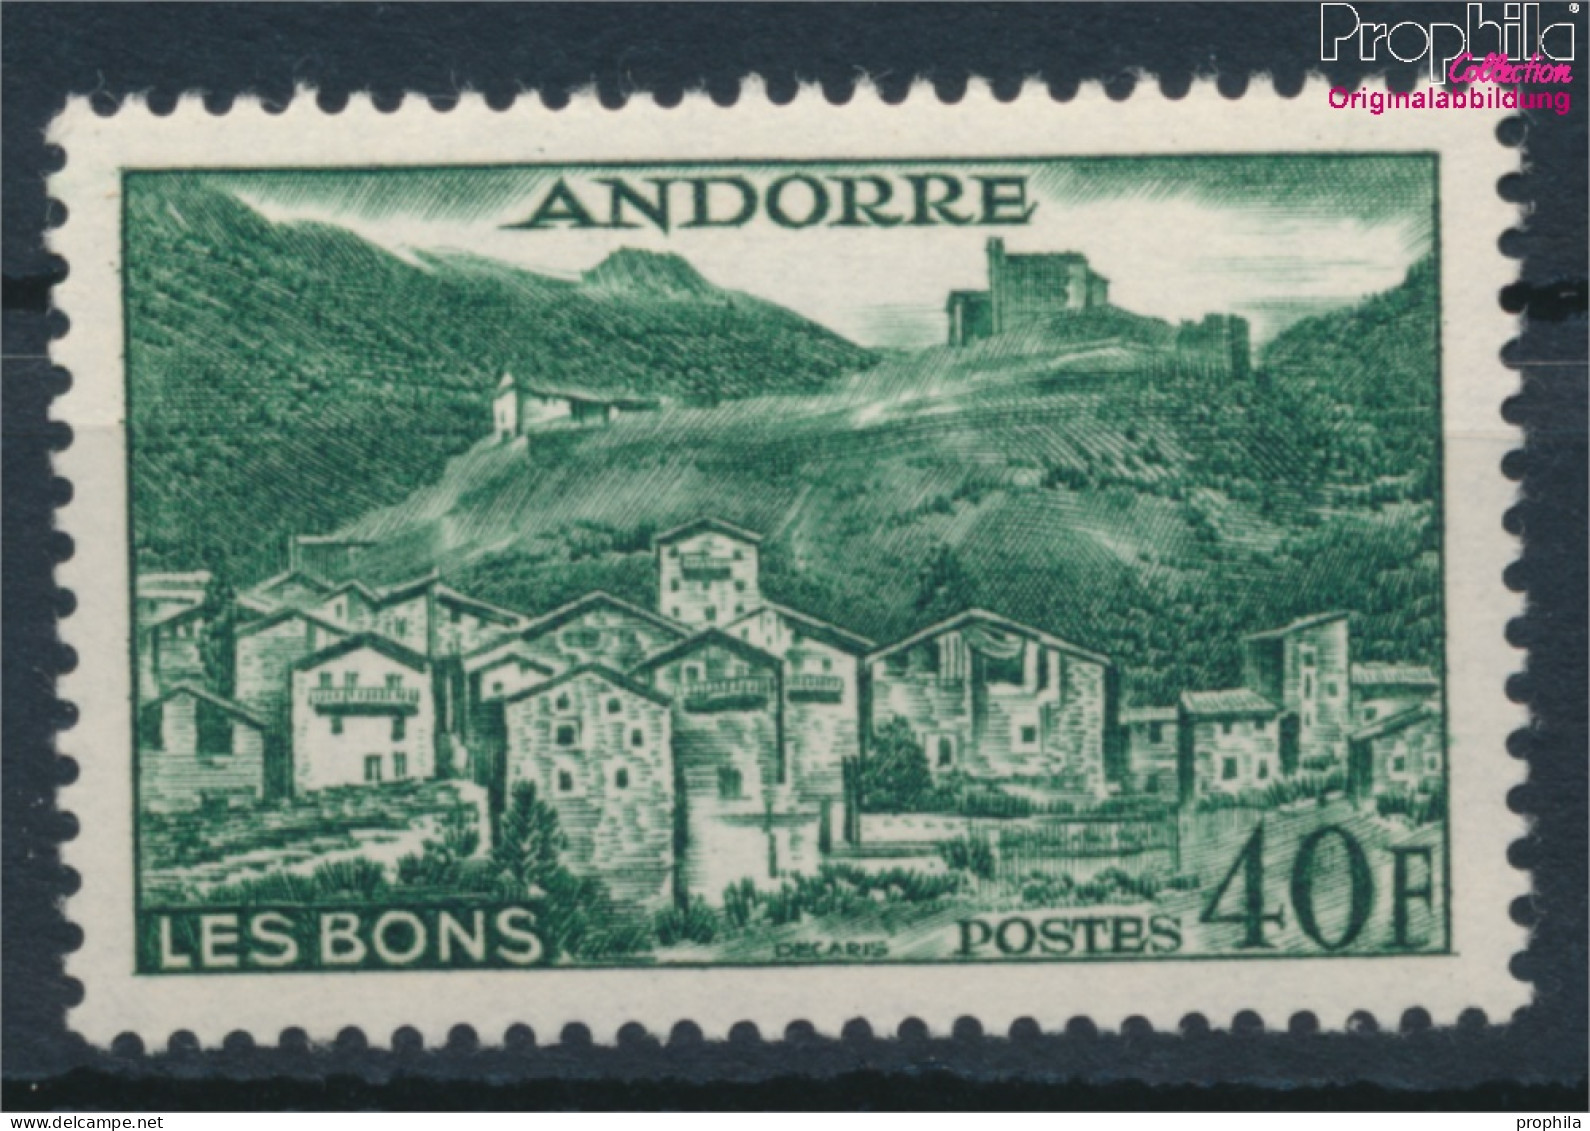 Andorra - Französische Post 155 Postfrisch 1955 Landschaften (10368396 - Neufs